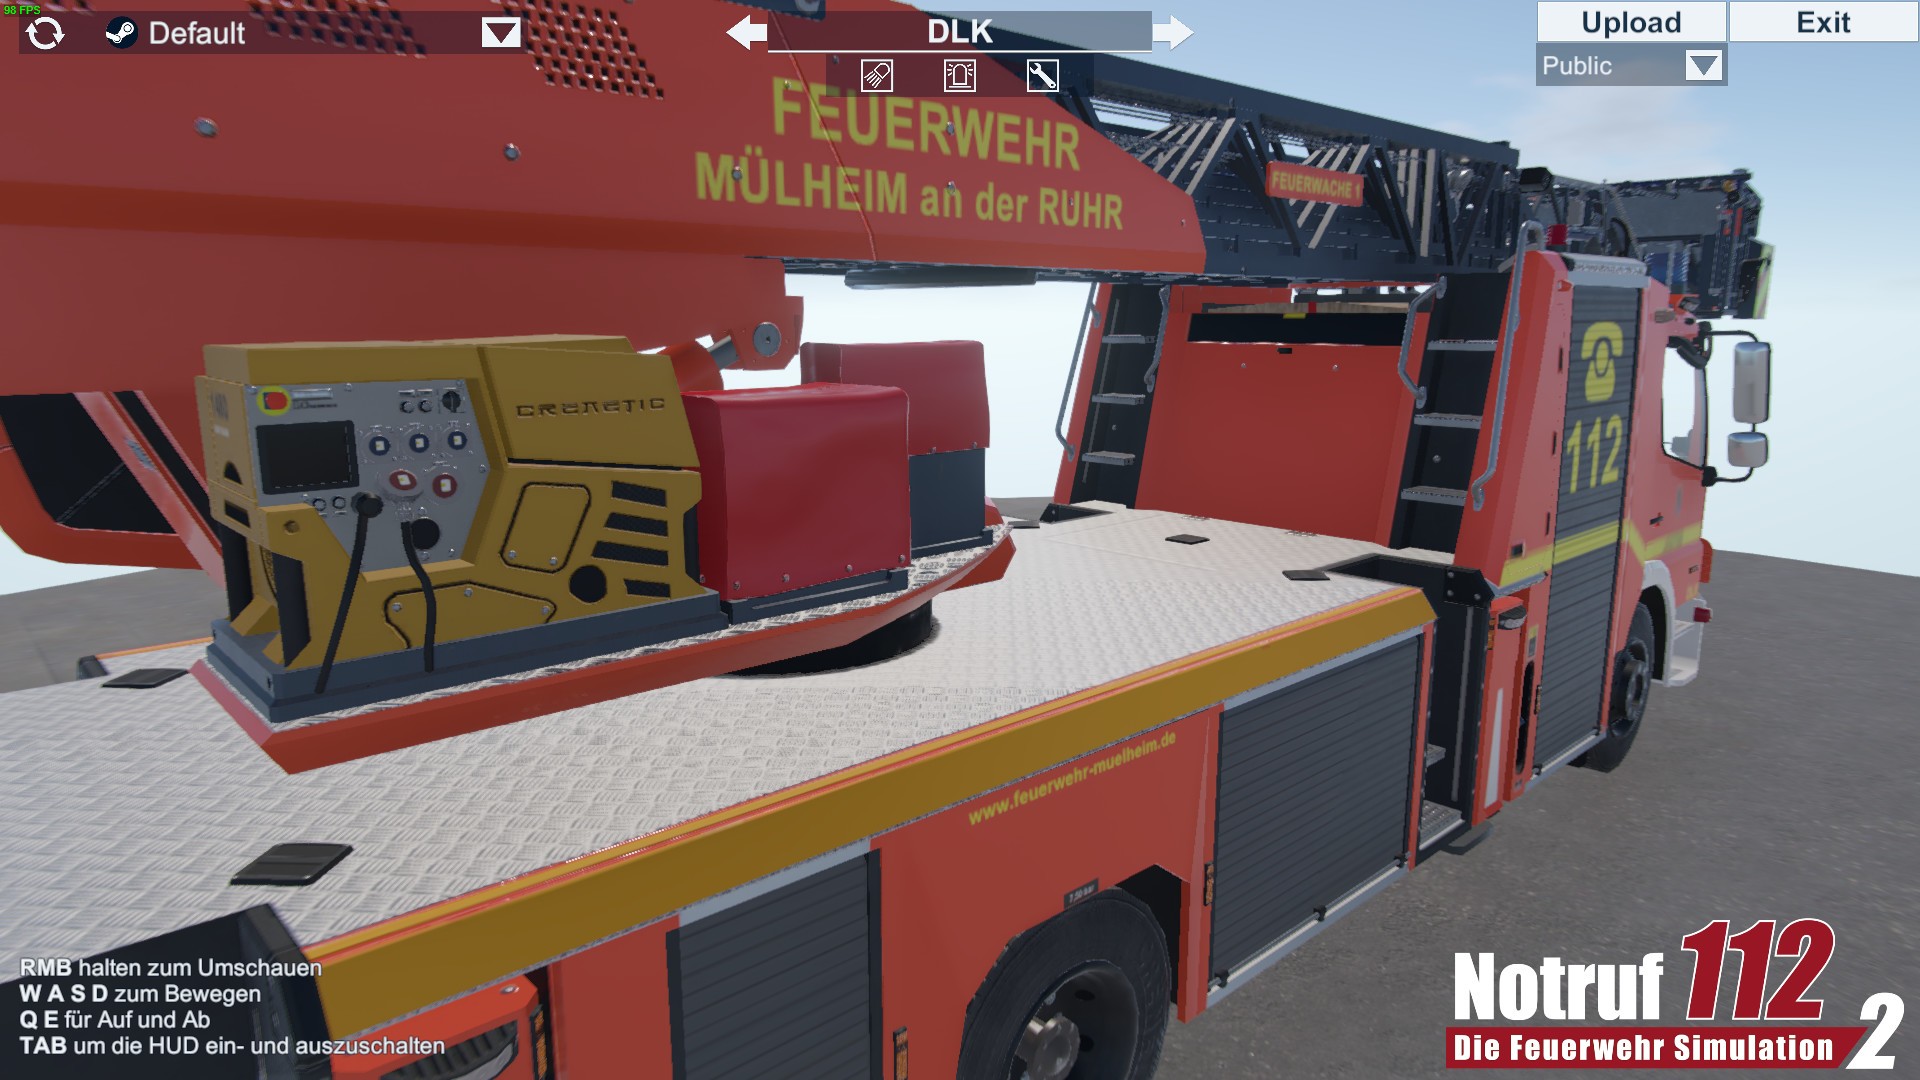 112 date, Die reviews on videos, - Feuerwehr Notruf Simulation Showroom release 2: screenshots, - RAWG